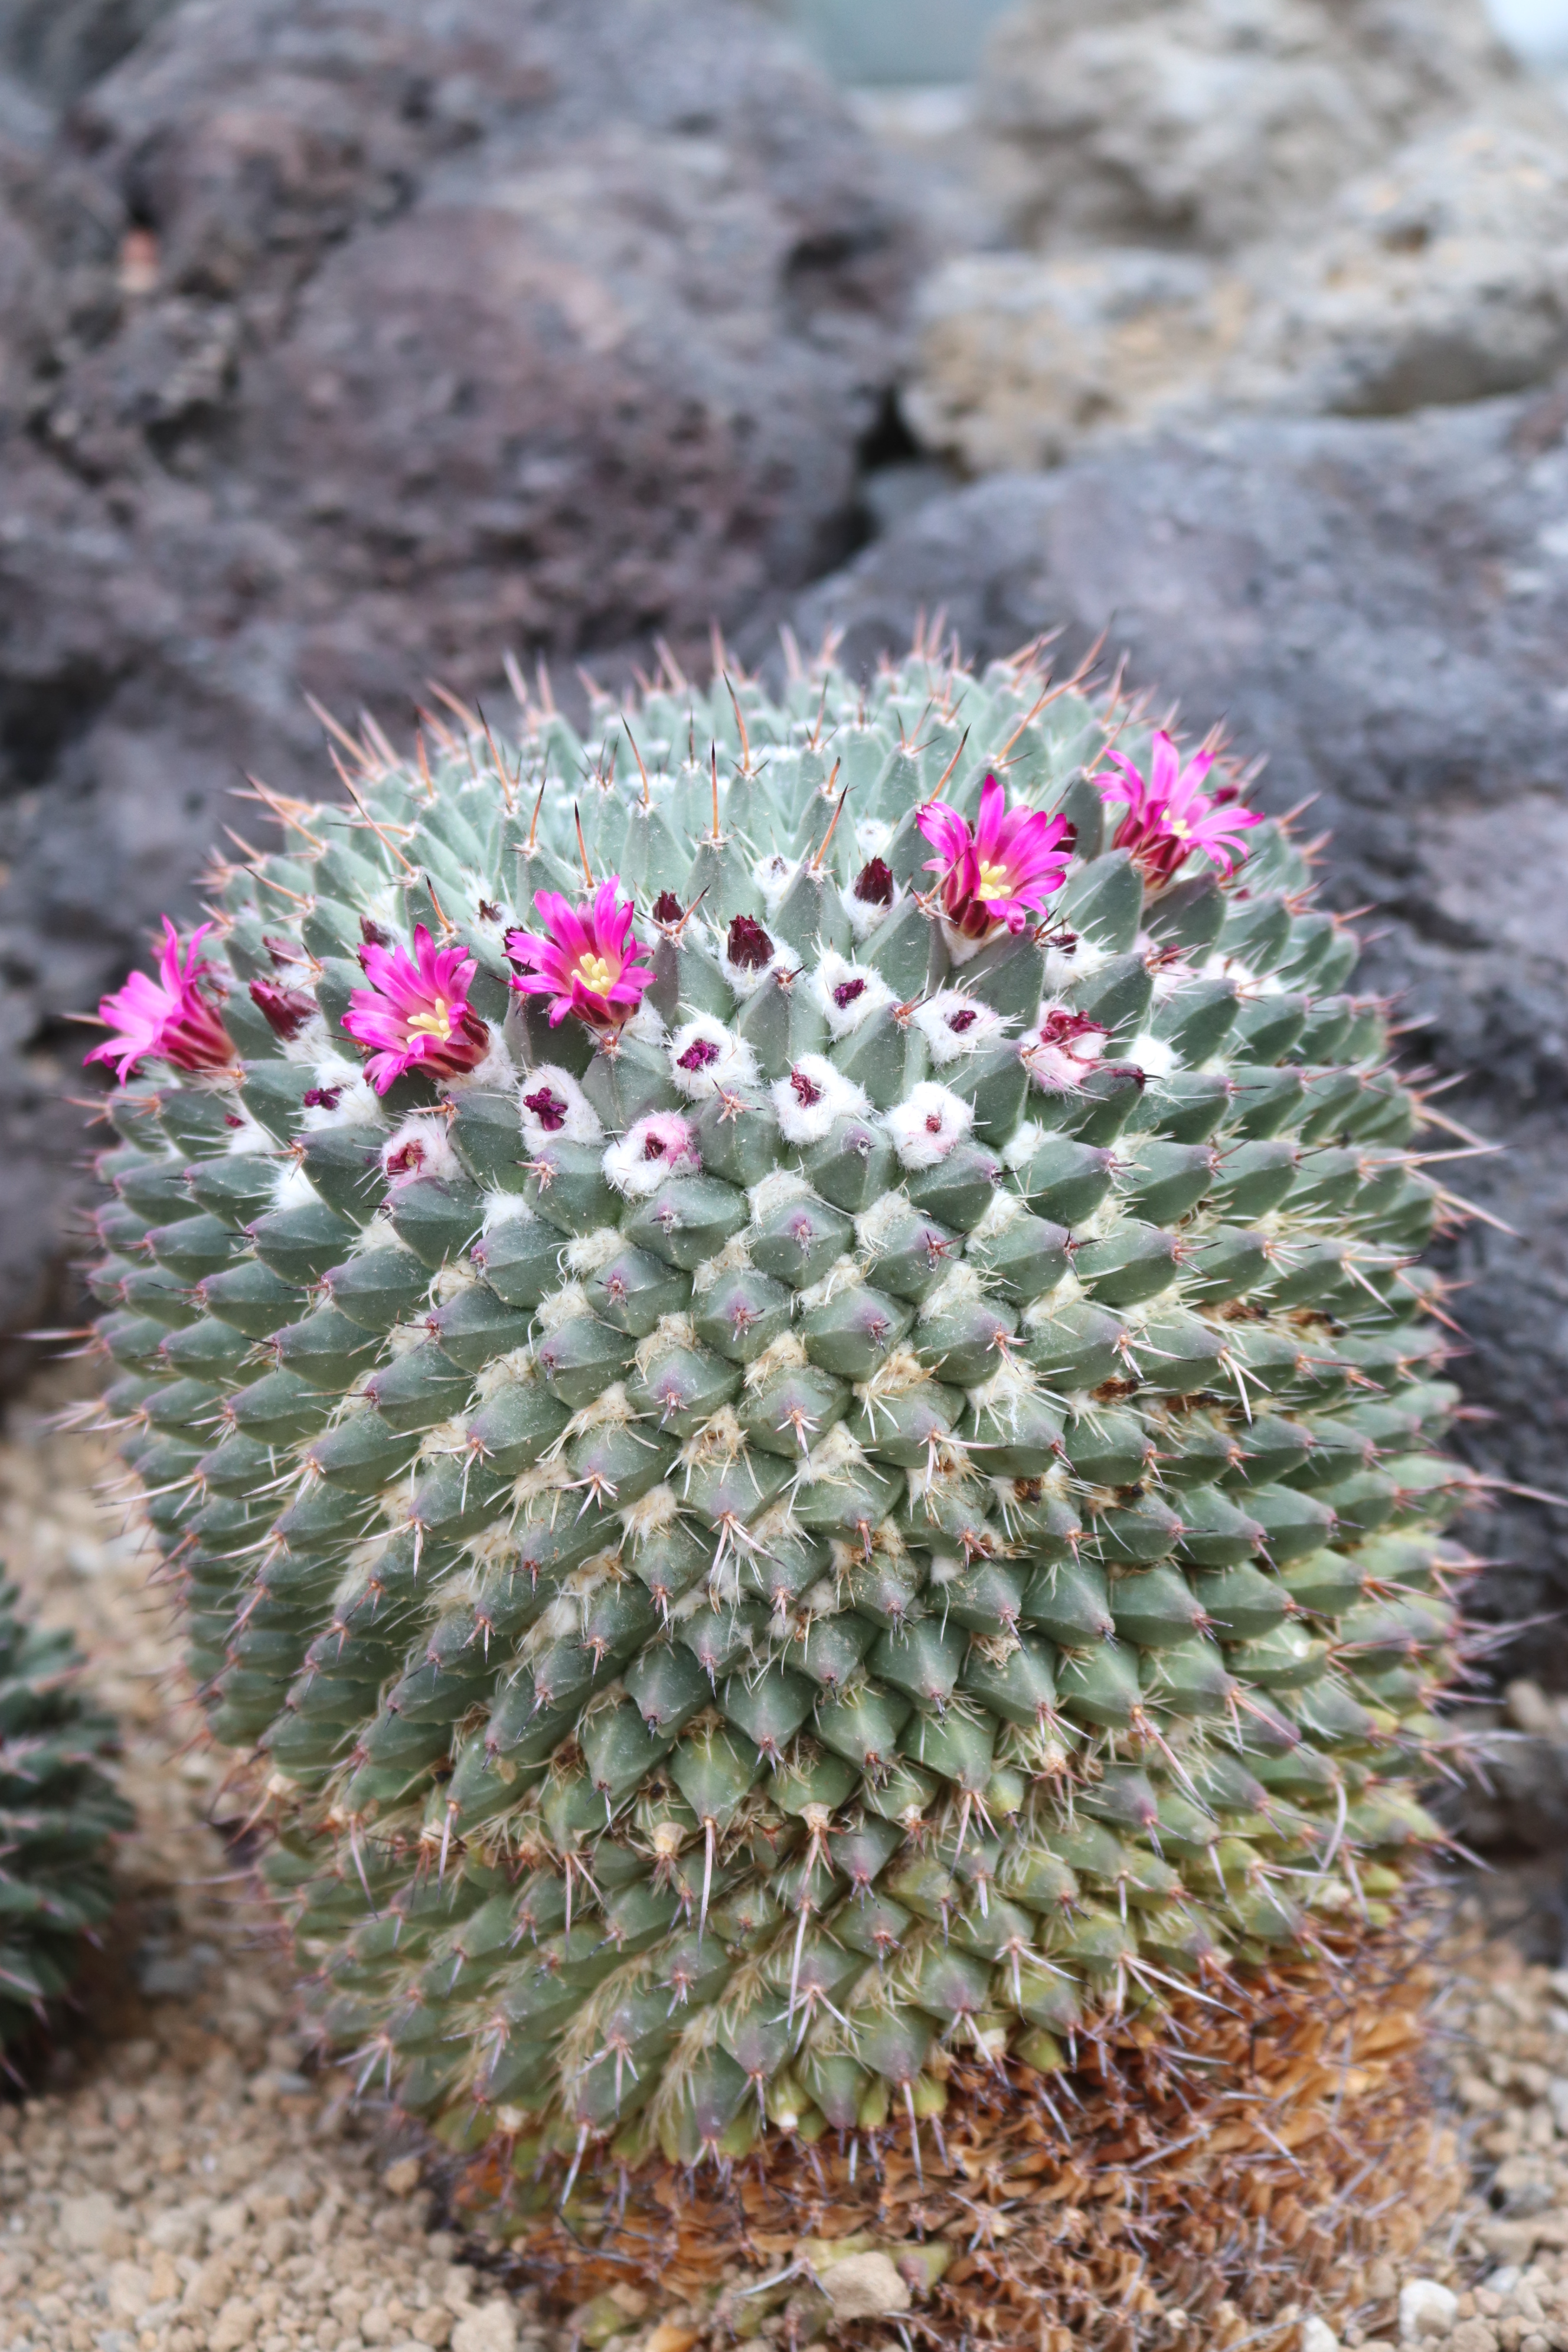 咲くやこの花館 乾燥 地植物室にてメキシコ原産の マミラリア ポリテレ が小さなお花を咲かせはじめています ピンク色のお花が可愛らしいですね 他にも 乾燥地植物室では サボテンのお花が続々と見頃を迎えています 是非ご覧ください 咲くや